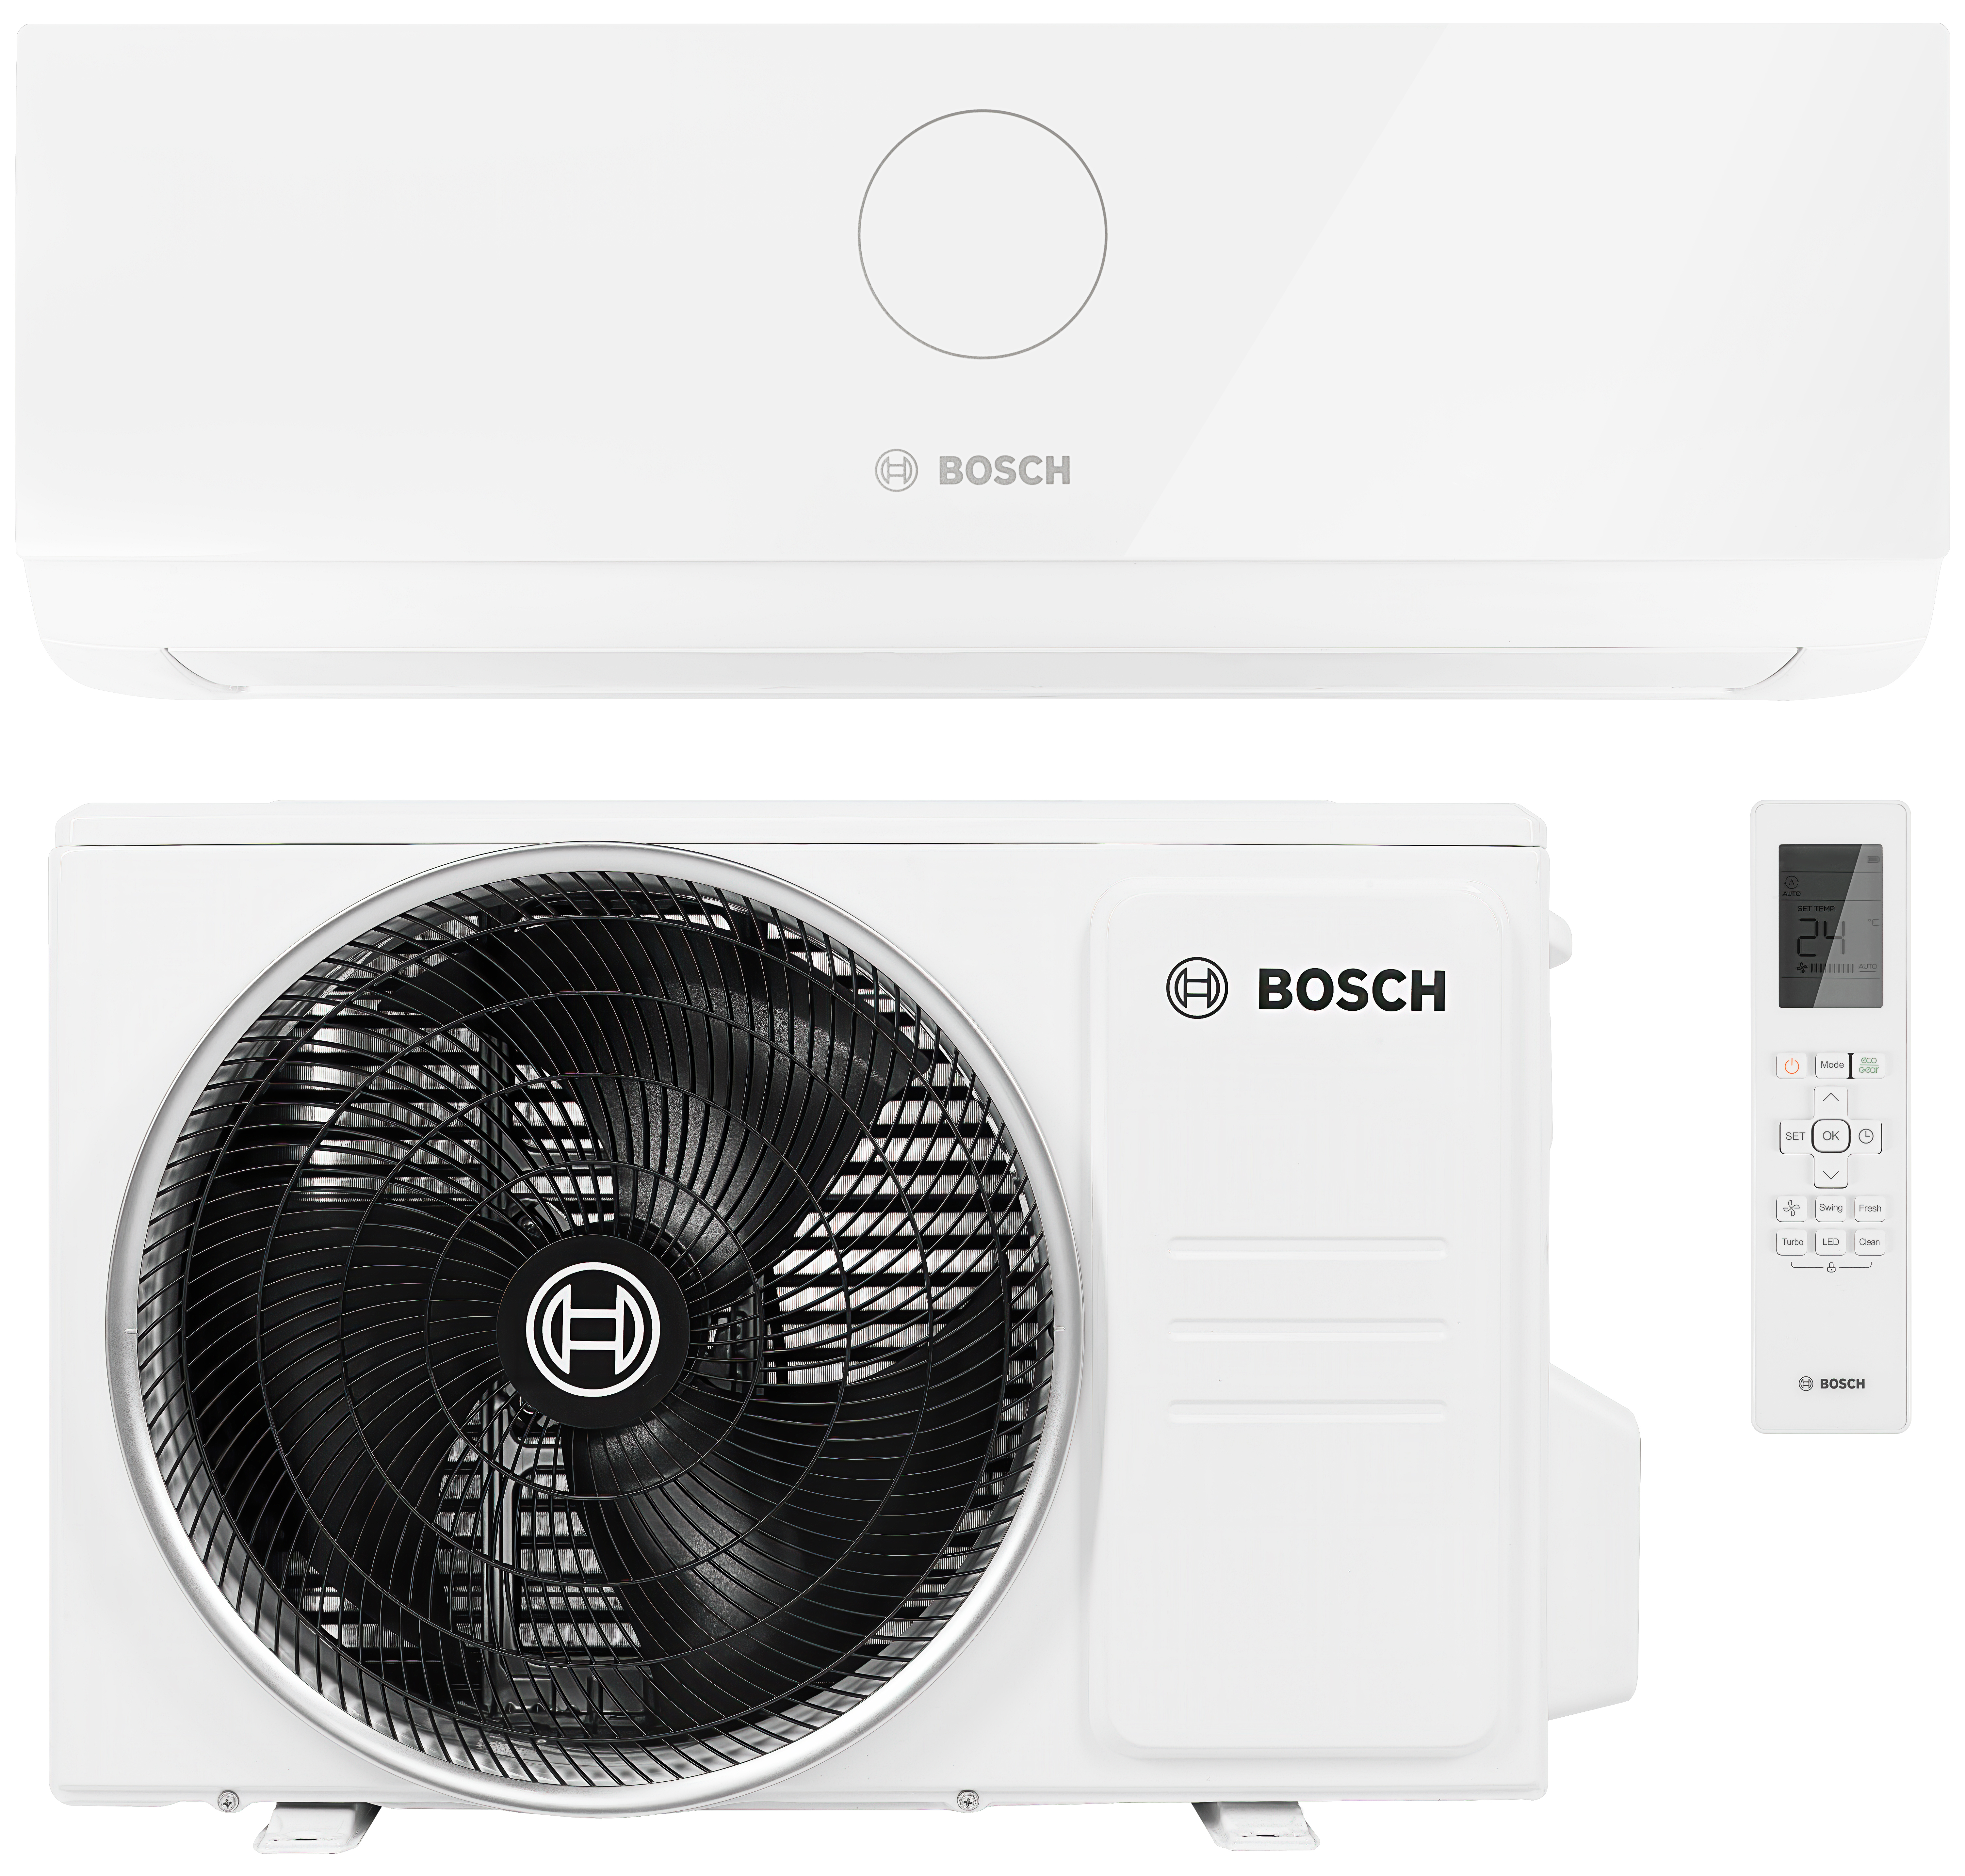 Інструкція кондиціонер спліт-система Bosch Climate CL3000i 26 E